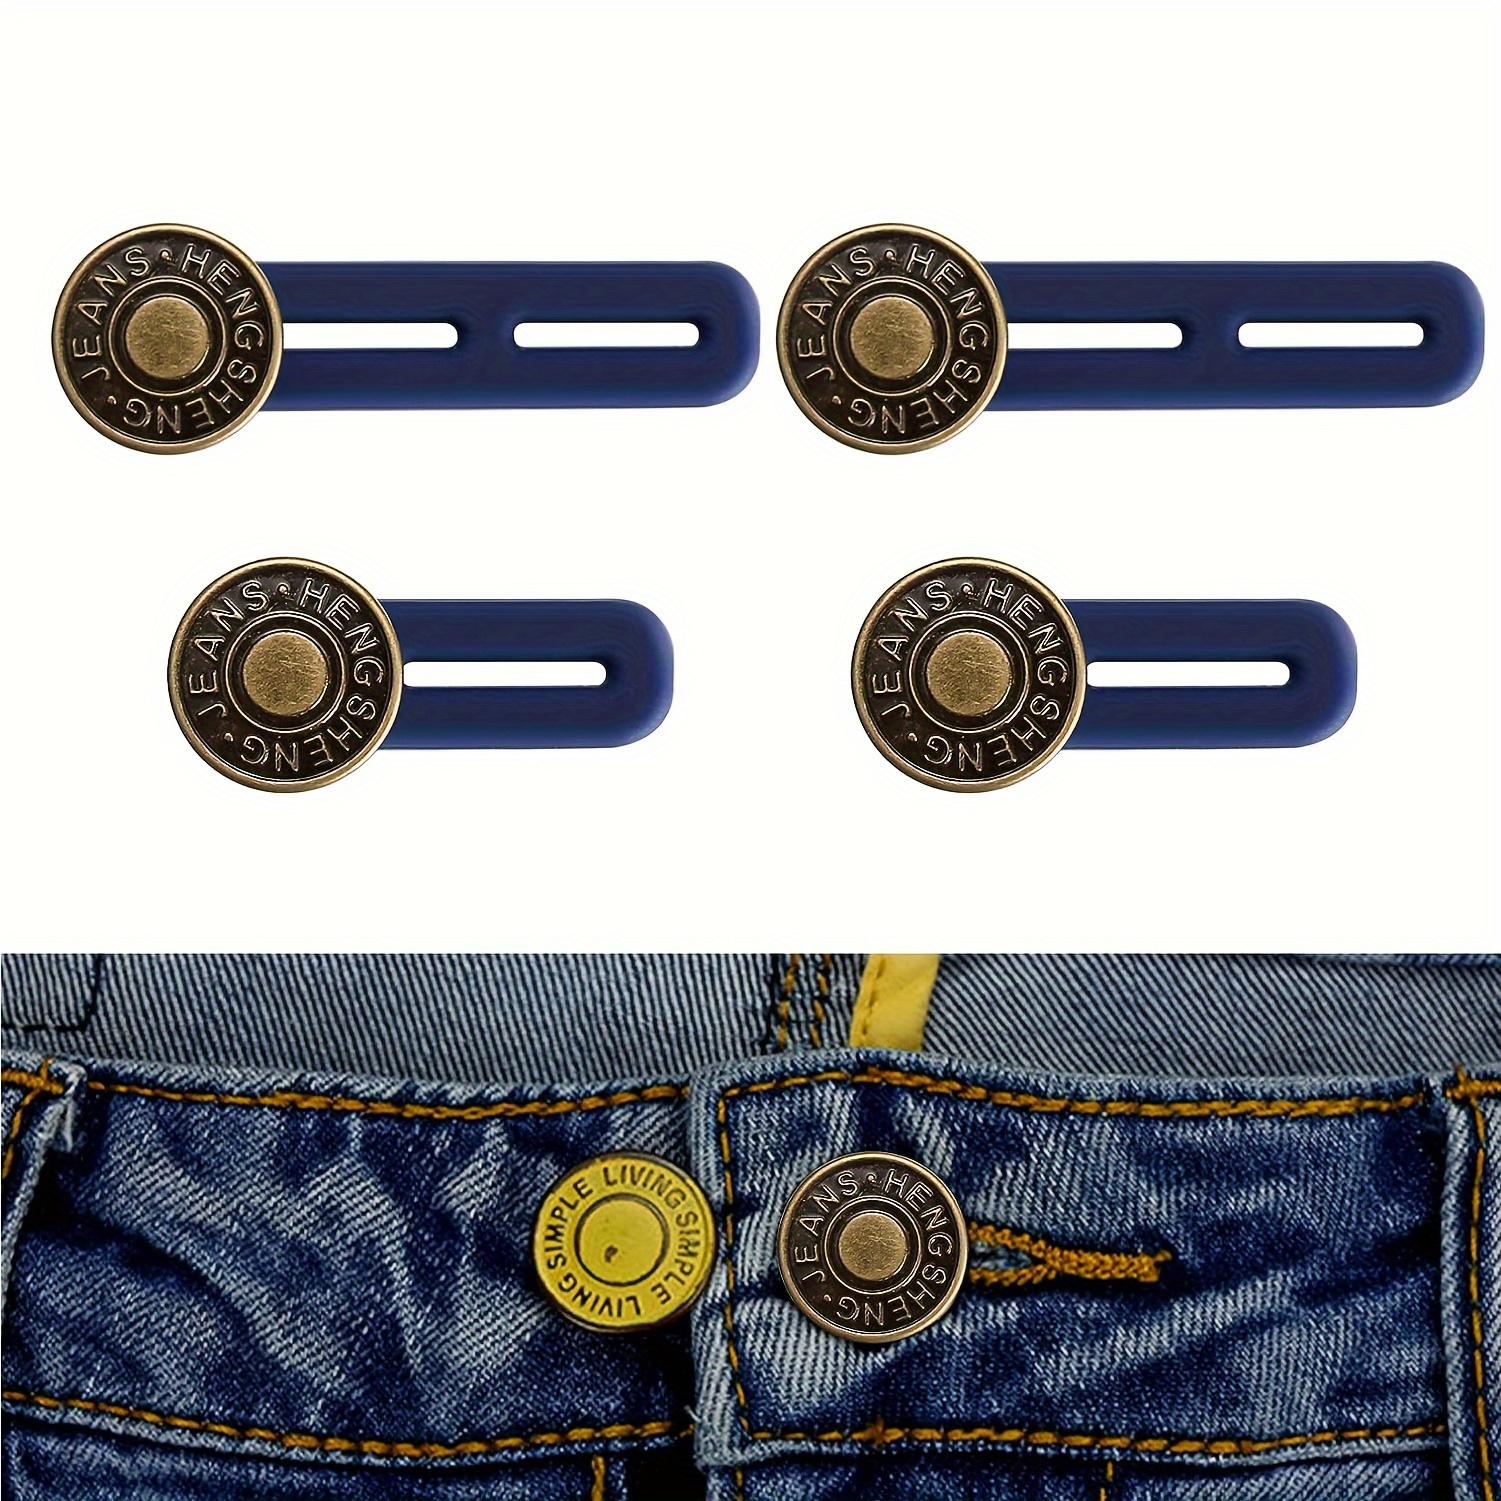 6pcs buttons for jeans jean button loose jeans buttons Elastic Zinc Alloy